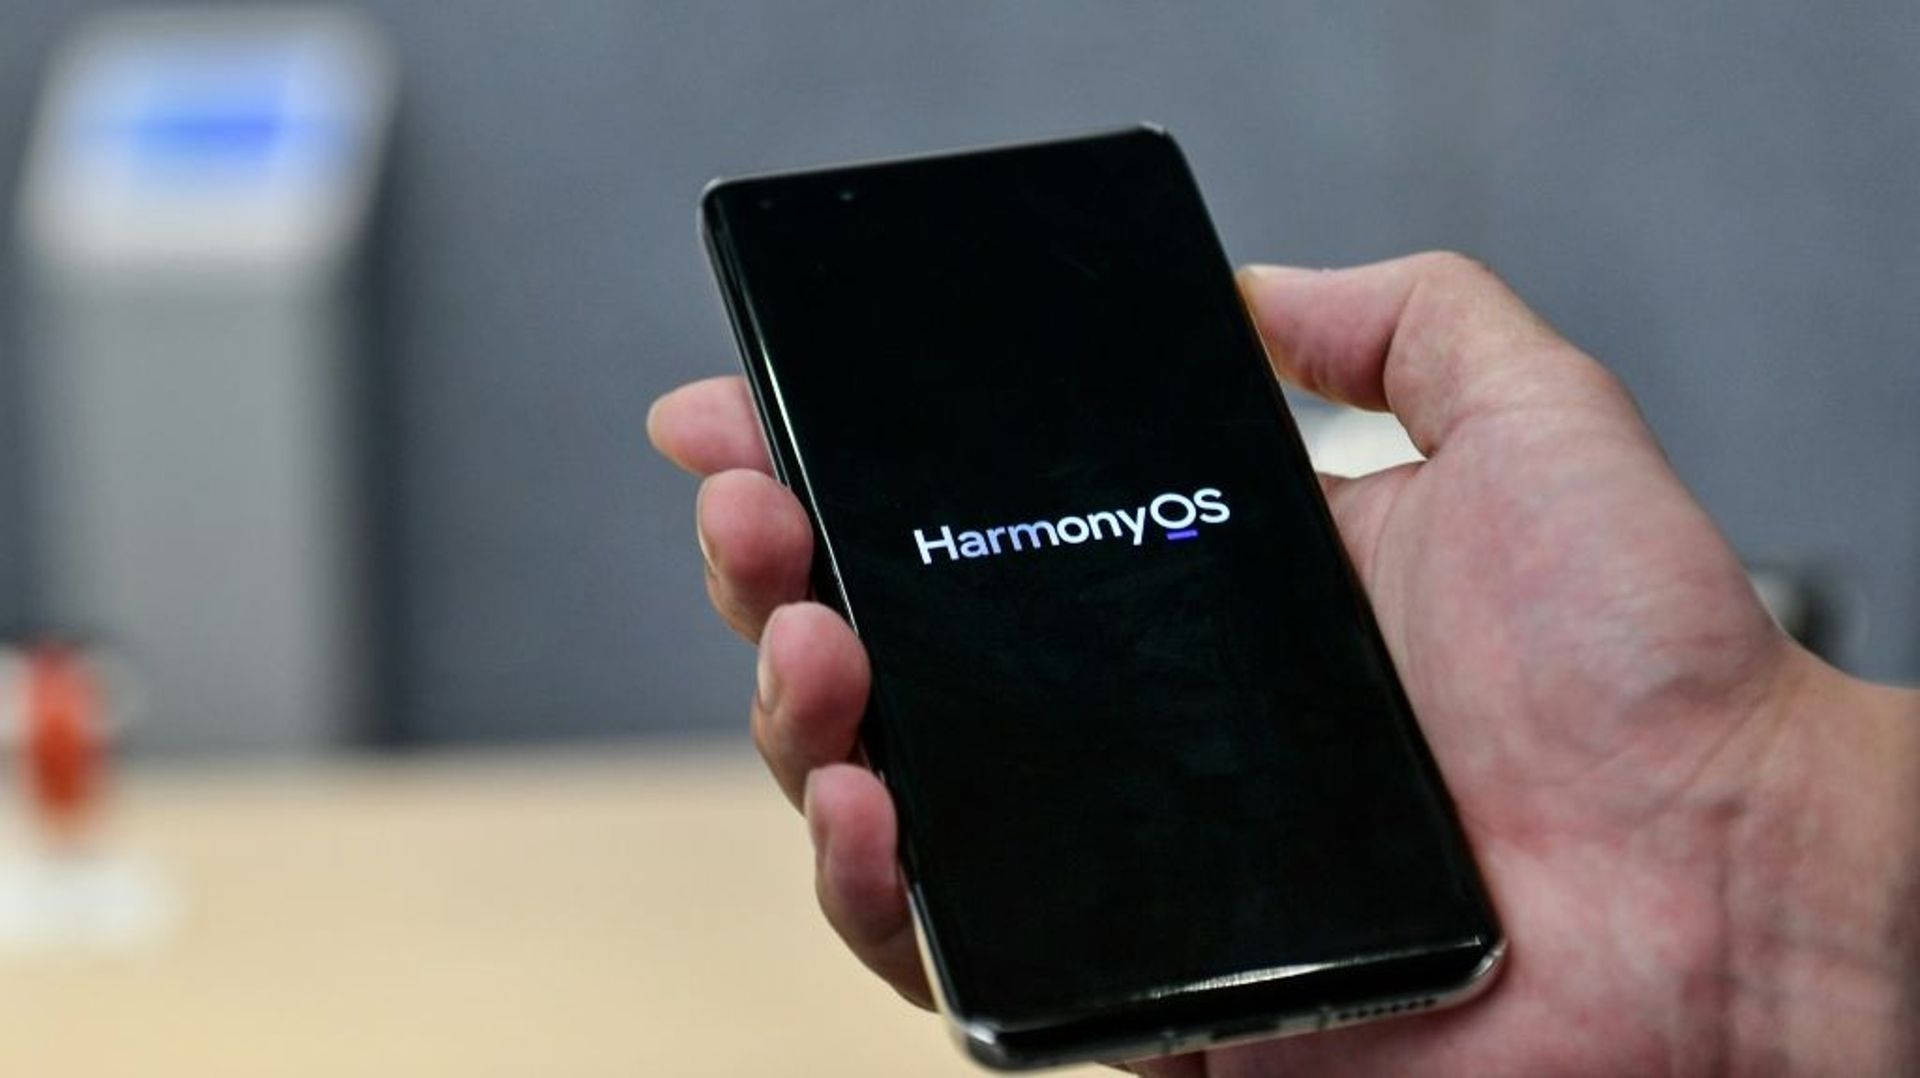 Le géant chinois des télécoms Huawei, en butte aux sanctions américaines, a lancé mercredi son système d'exploitation maison, HarmonyOs, afin de mieux lutter pour sa survie dans l'arène des smartphones après avoir été privé de licence Android, propriété d